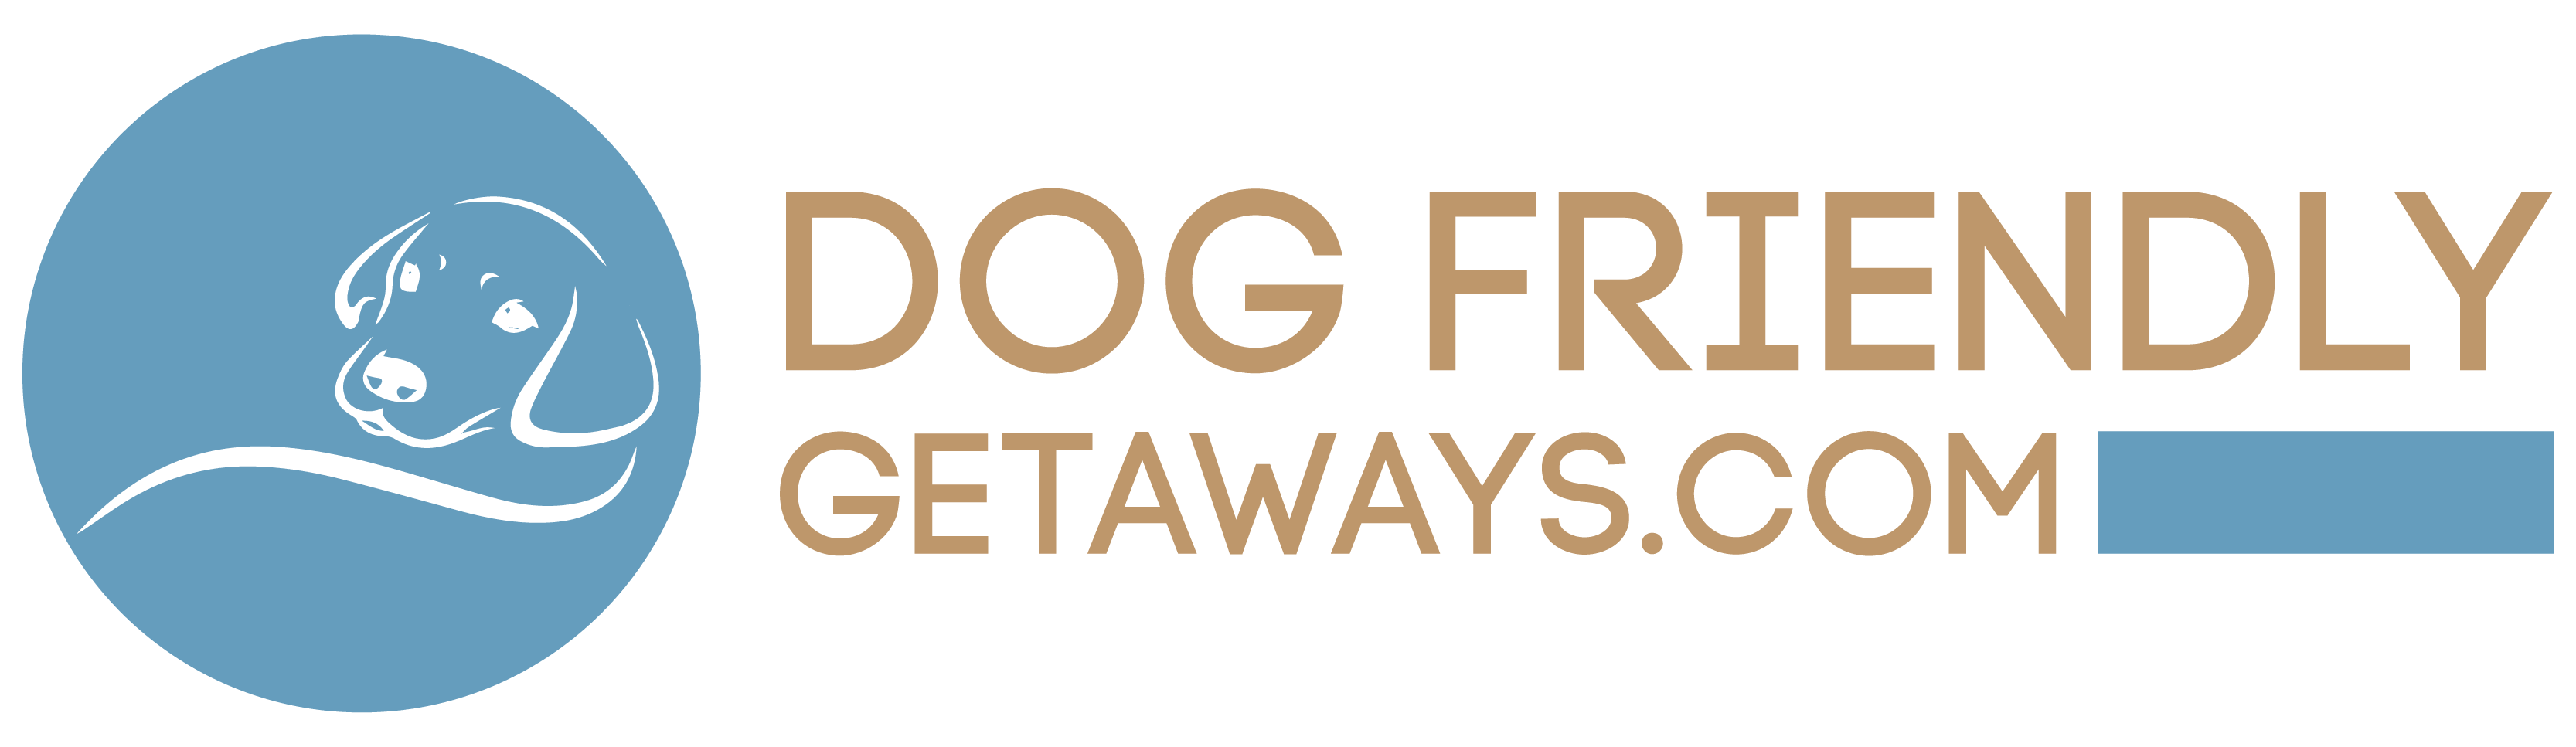 Dog Friendly Getaways